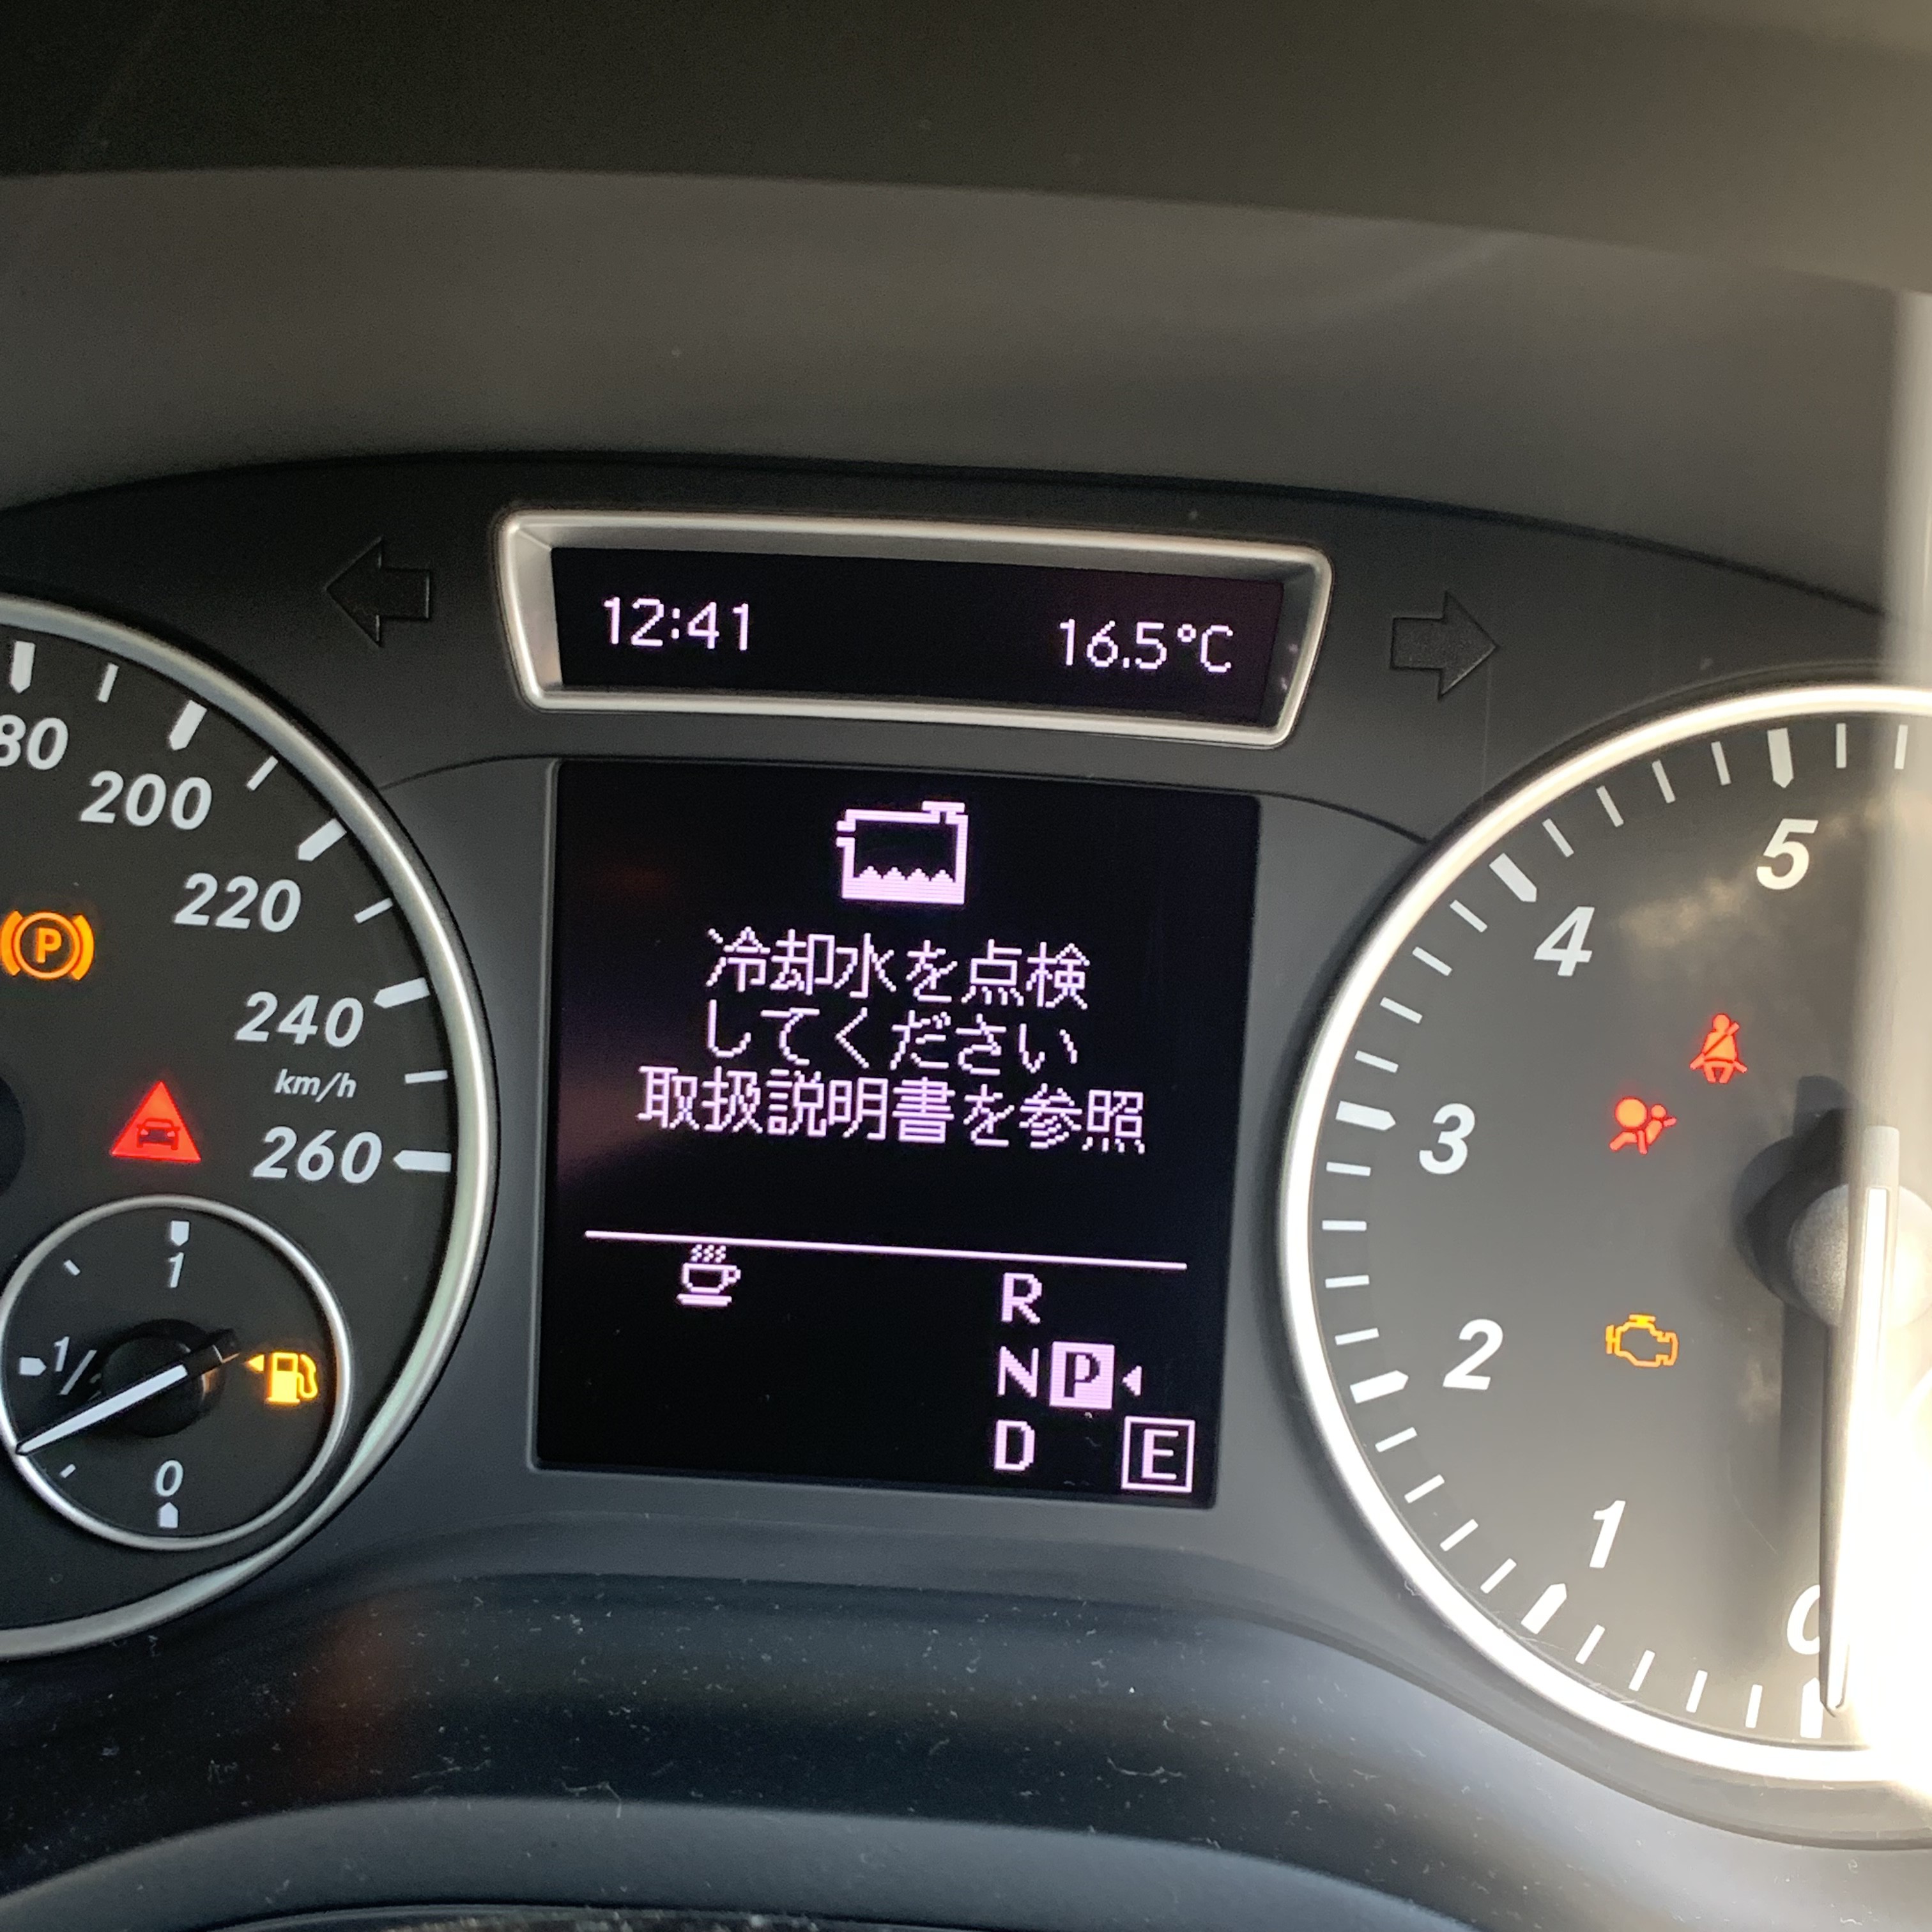 メルセデスベンツ Bクラス 冷却水警告灯 埼玉の外車車検 外車修理のウィングロード